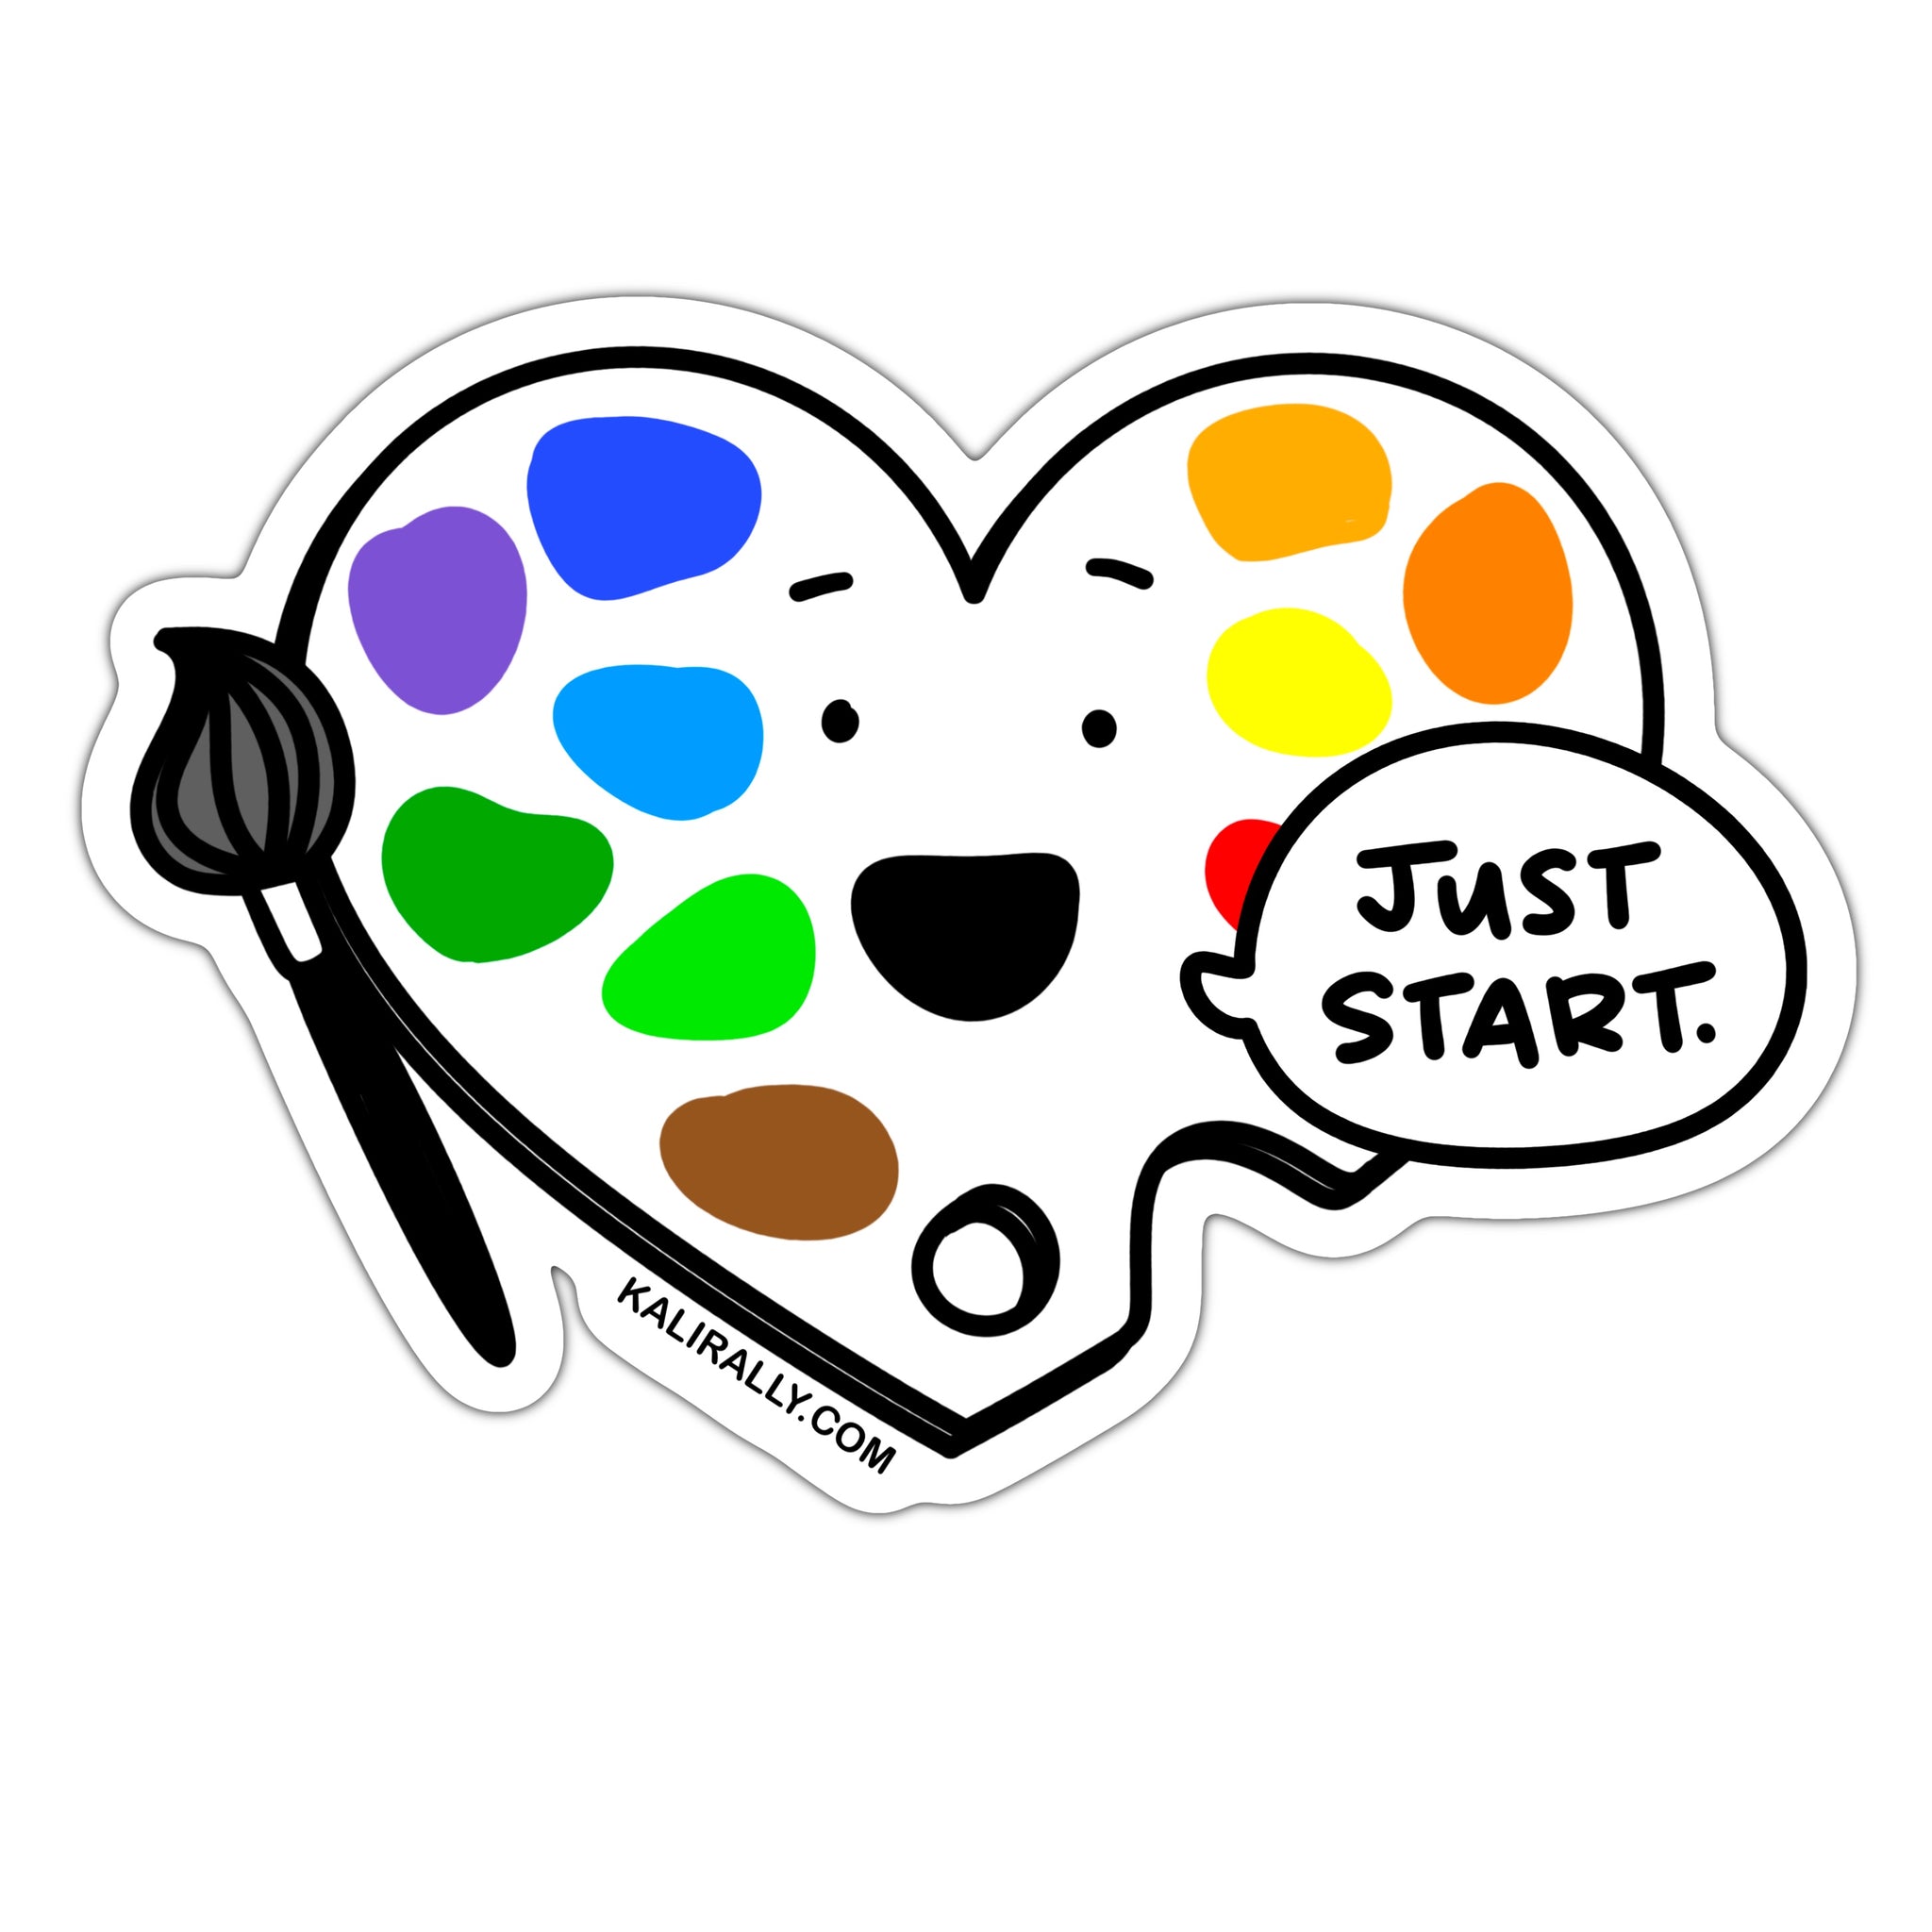 Artist motivation sticker, painter sticker, just start making art sticker